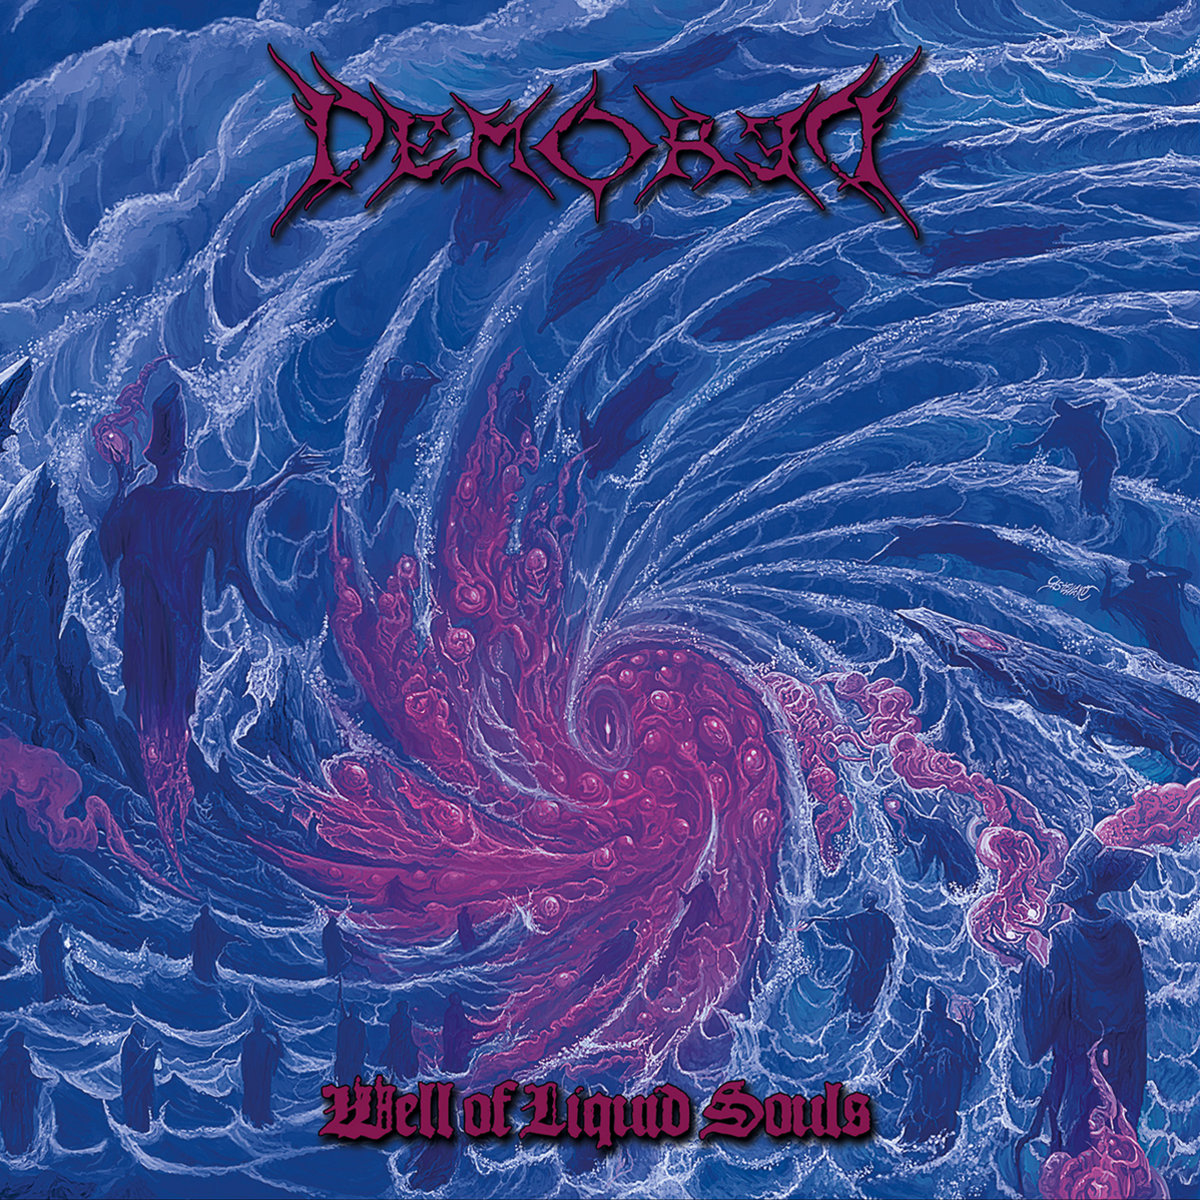 Staroškolský, temný a chladný death metal, který vám pustí žilou! Pád do hlubin věčnosti! Recenze/review - DEMORED - Well of Liquid Souls (2024): deadlystormzine.com/2024/05/recenz… #deathmetal #demored #review .@deadlystormzine .@newmetalalbums1 .@slawawasil2 .@metal_incognito .@DiscosDeath